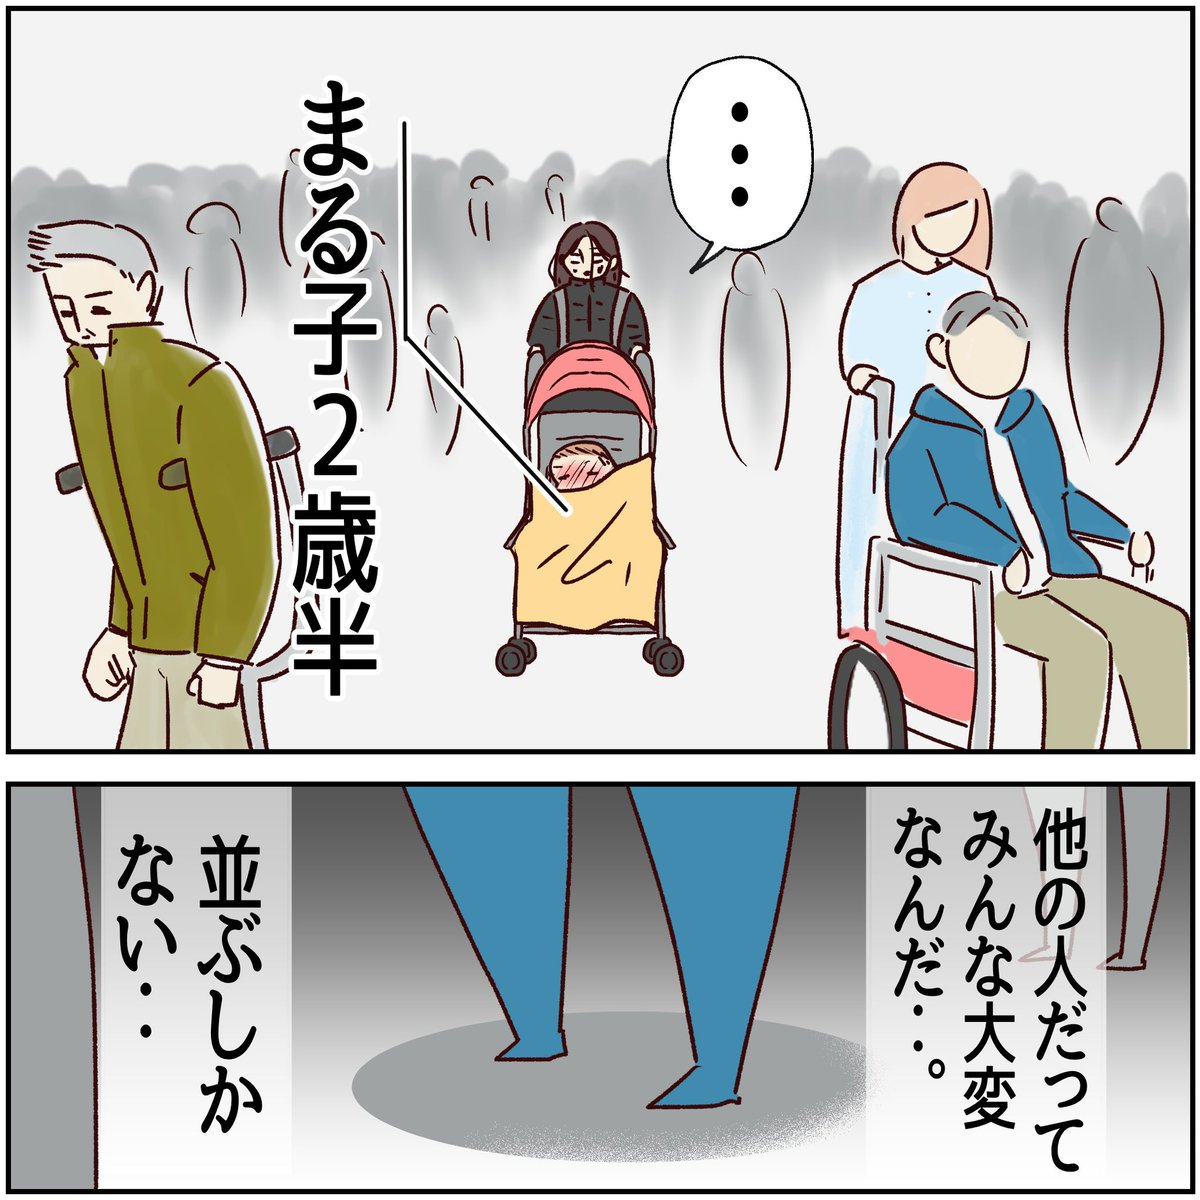 川崎病 手遅れになりかけた話【34】
(1/2)

他の人だってみな大変なんだ…。
並ぶしかない…。

#川崎病 #エッセイ漫画 